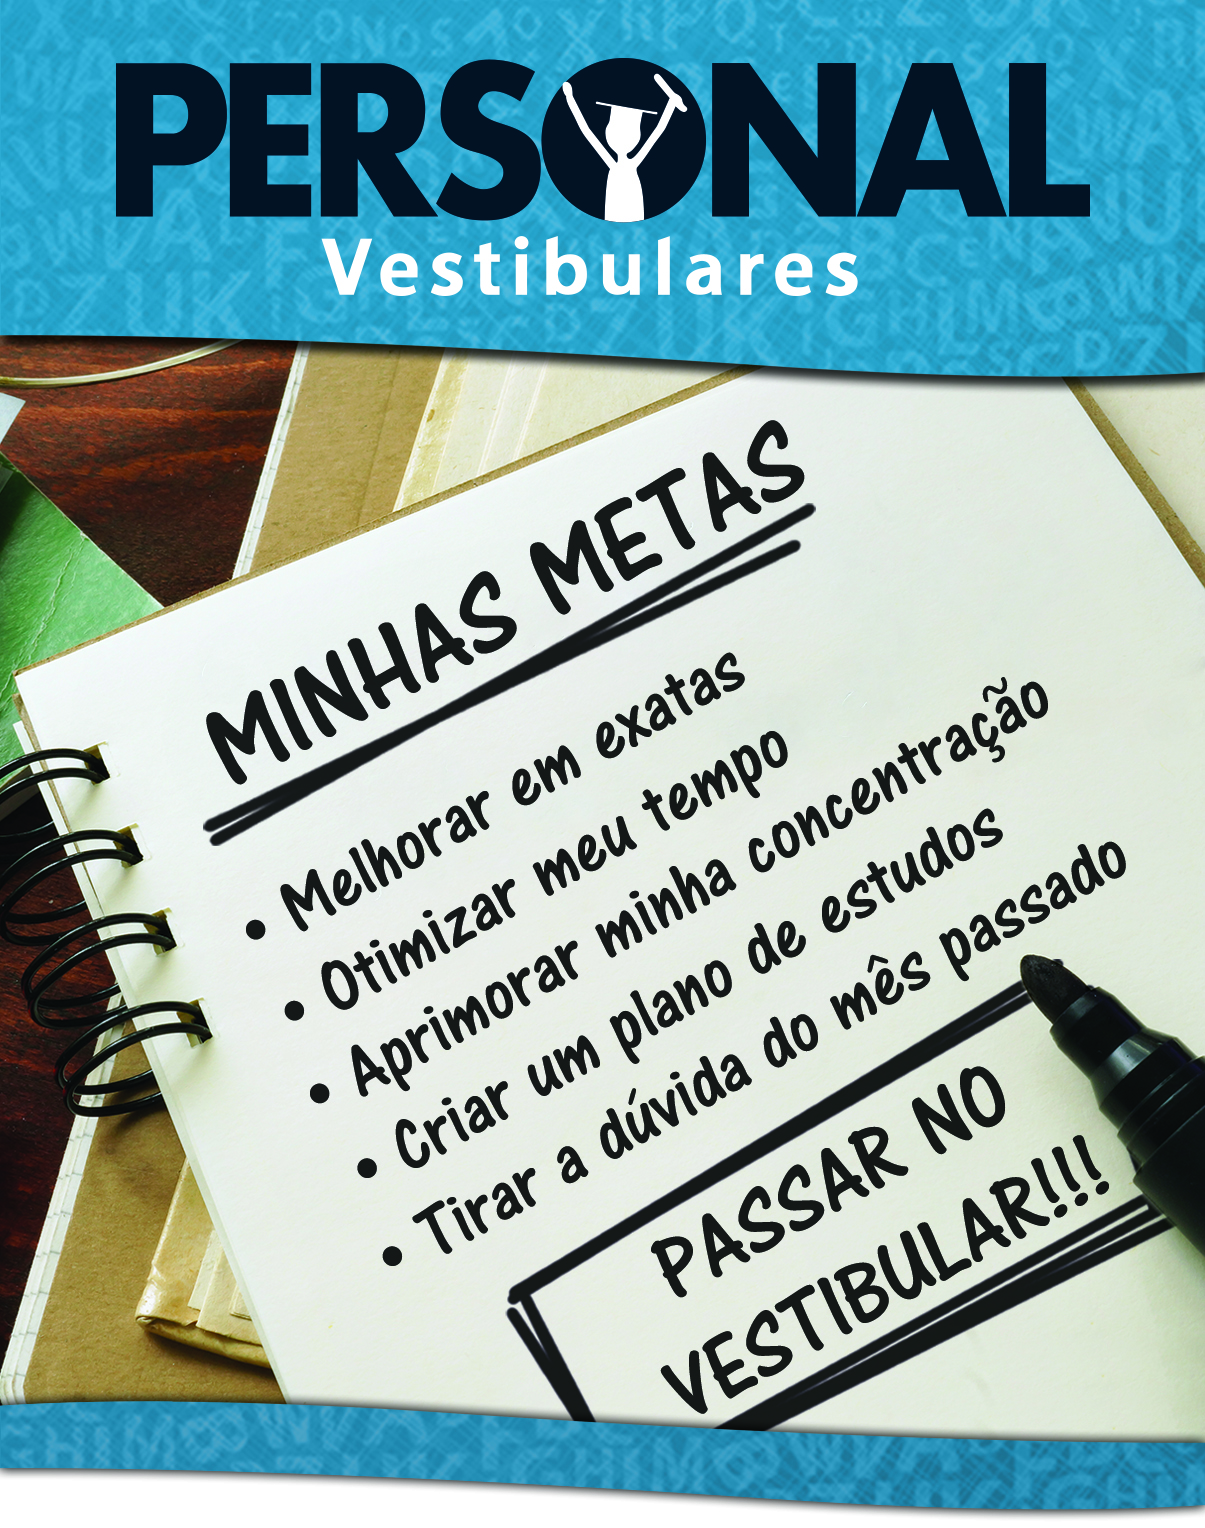 Personal Vestibulares - Curso Pr Vestibular Personalizado em So Caetano do Sul